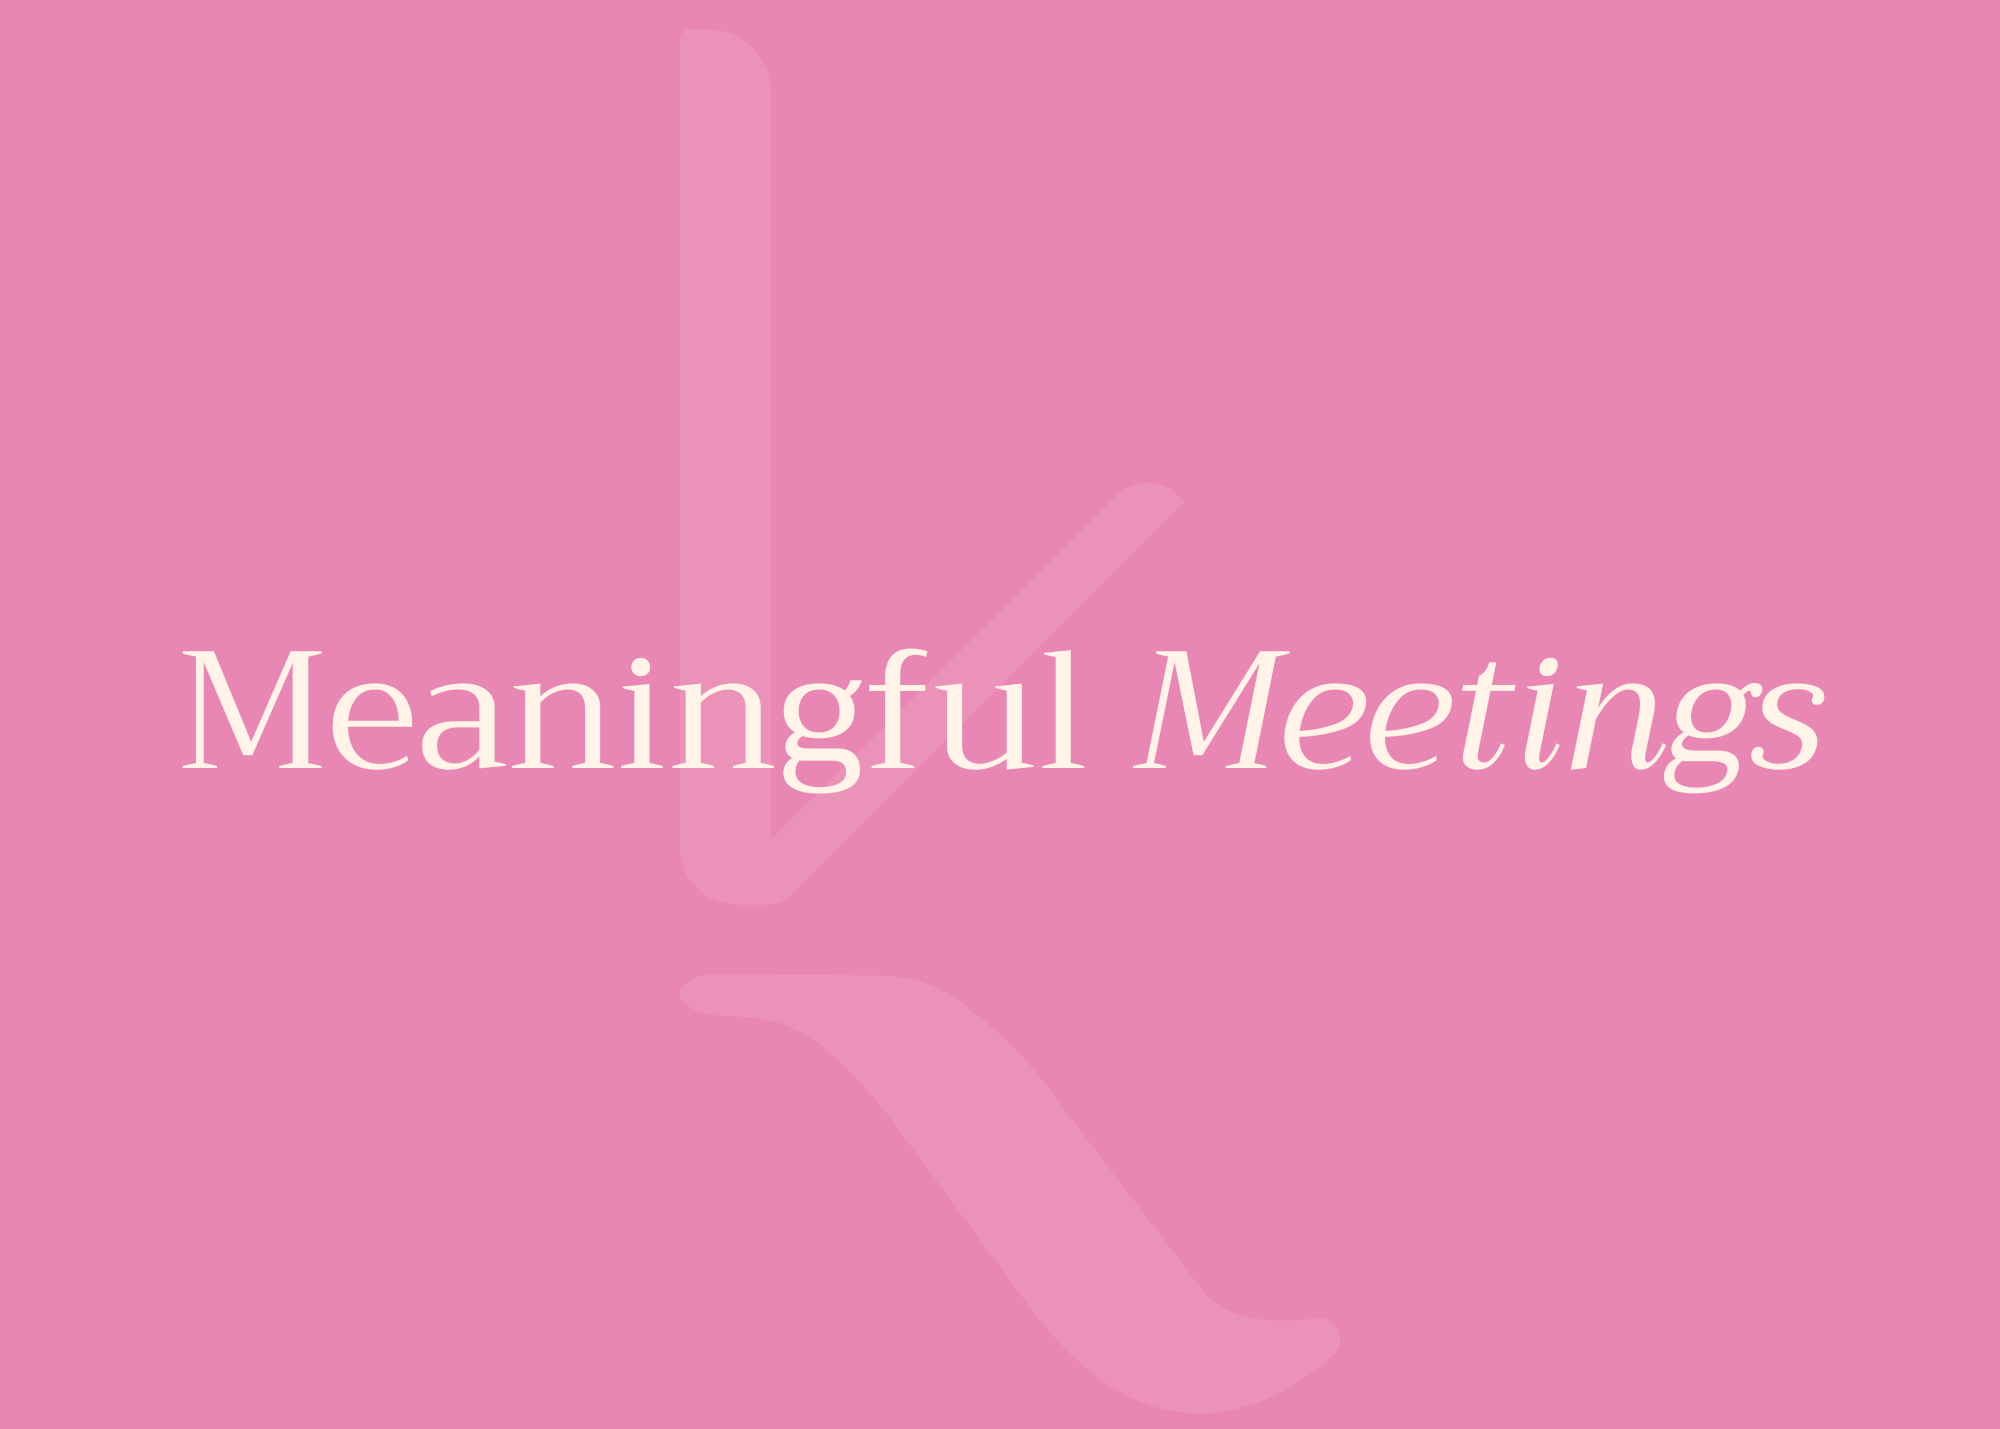 Meaningful meetings